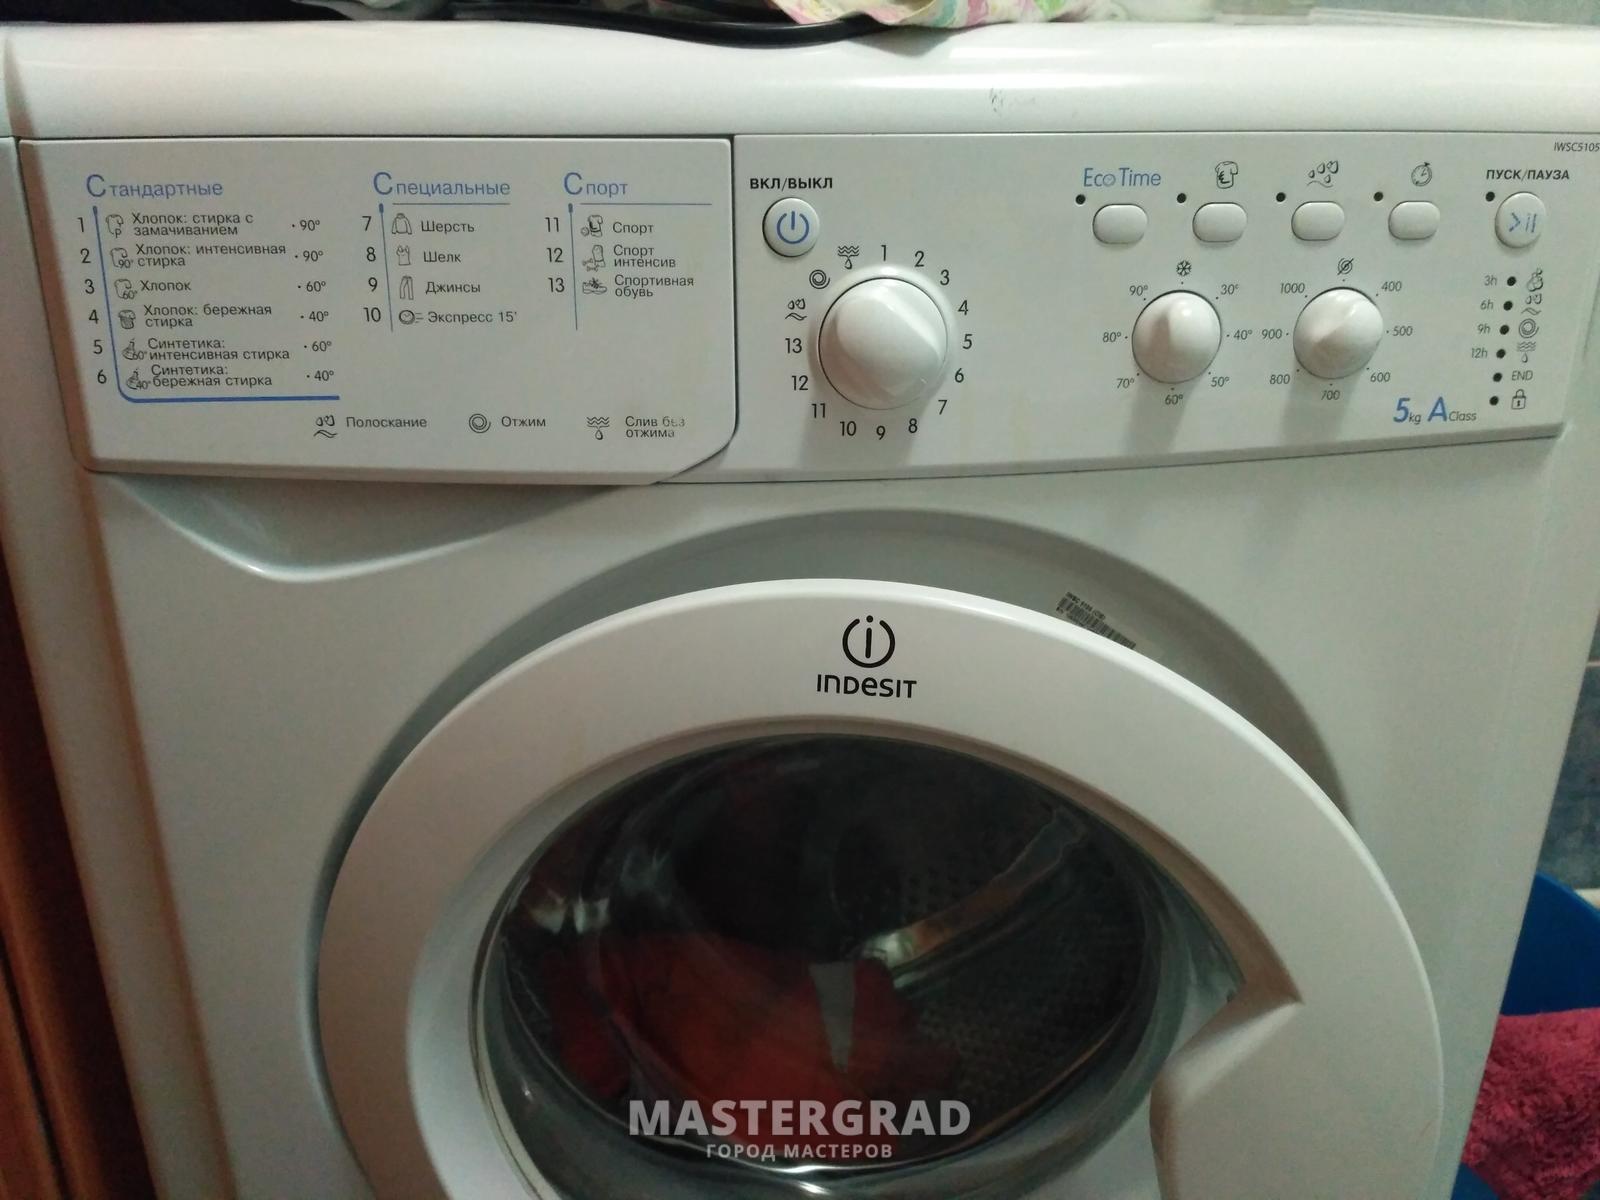 Замена подшипников на стиральной машине Indesit самостоятельно и правильно